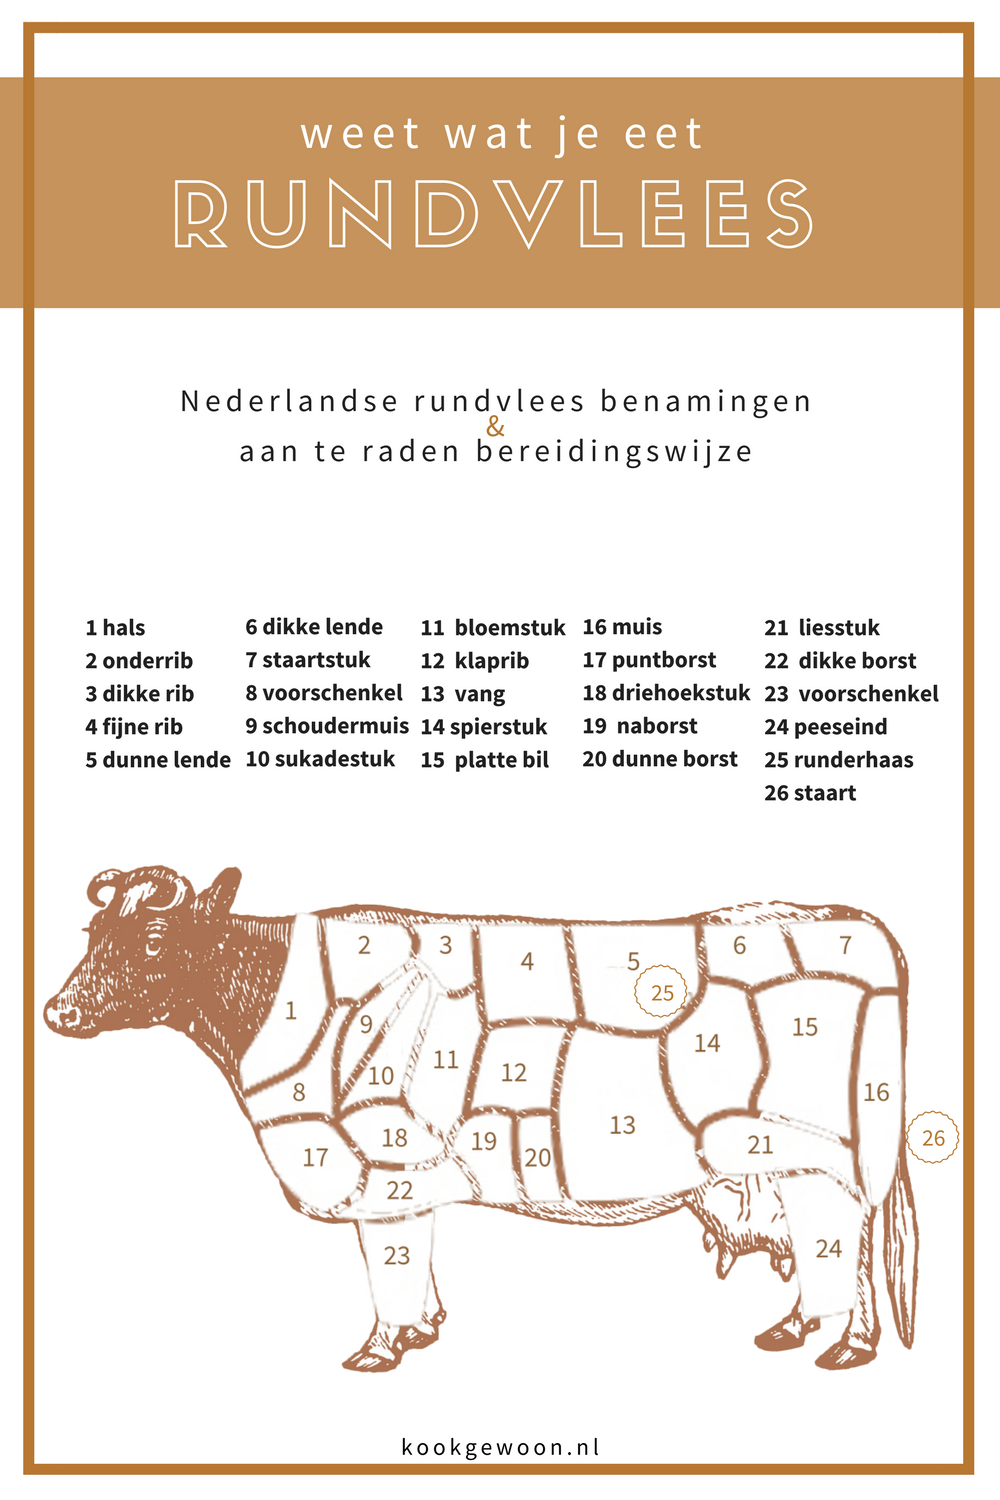 beef cut nederlandse rundvleesbenaming